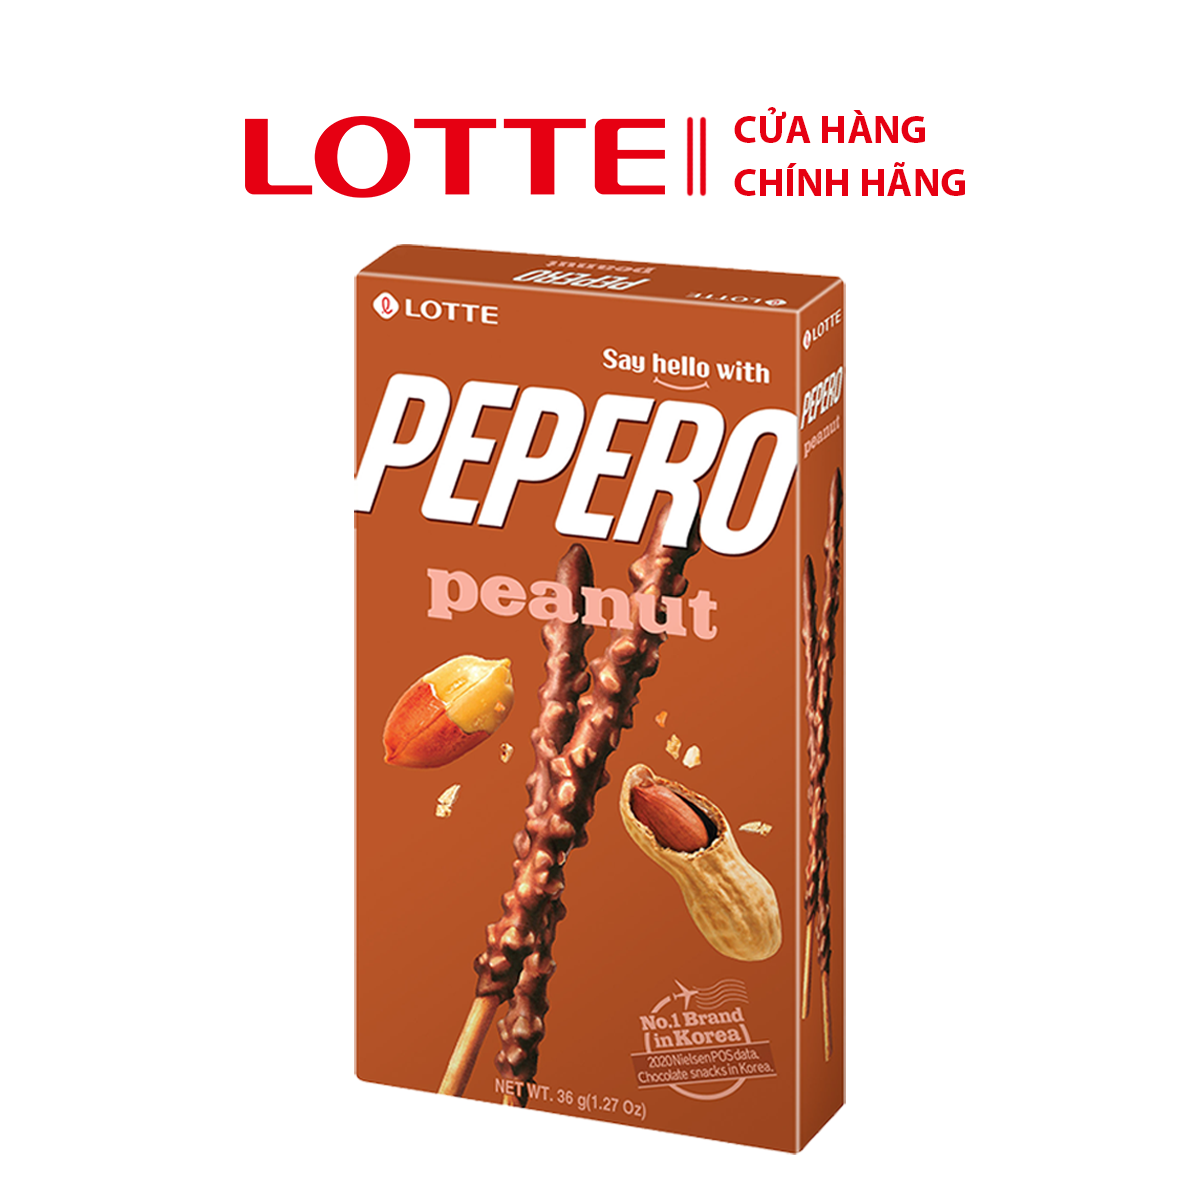 Bánh que Lotte Pepero vị Sô cô la đậu phộng Peanut